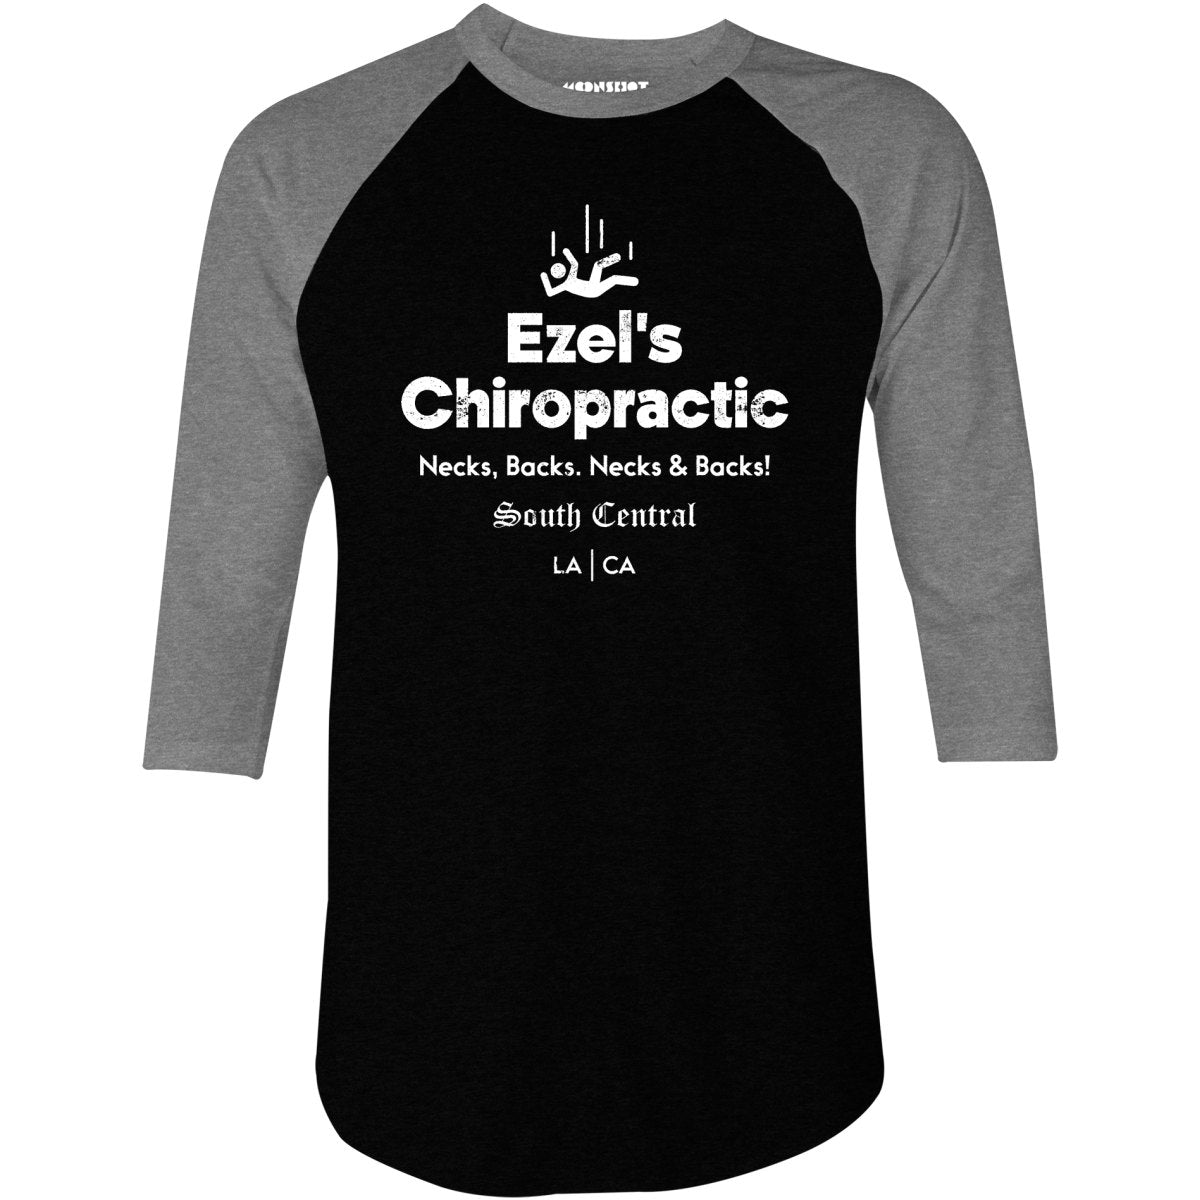 Ezel's Chiropractic - 3/4 Sleeve Raglan T-Shirt